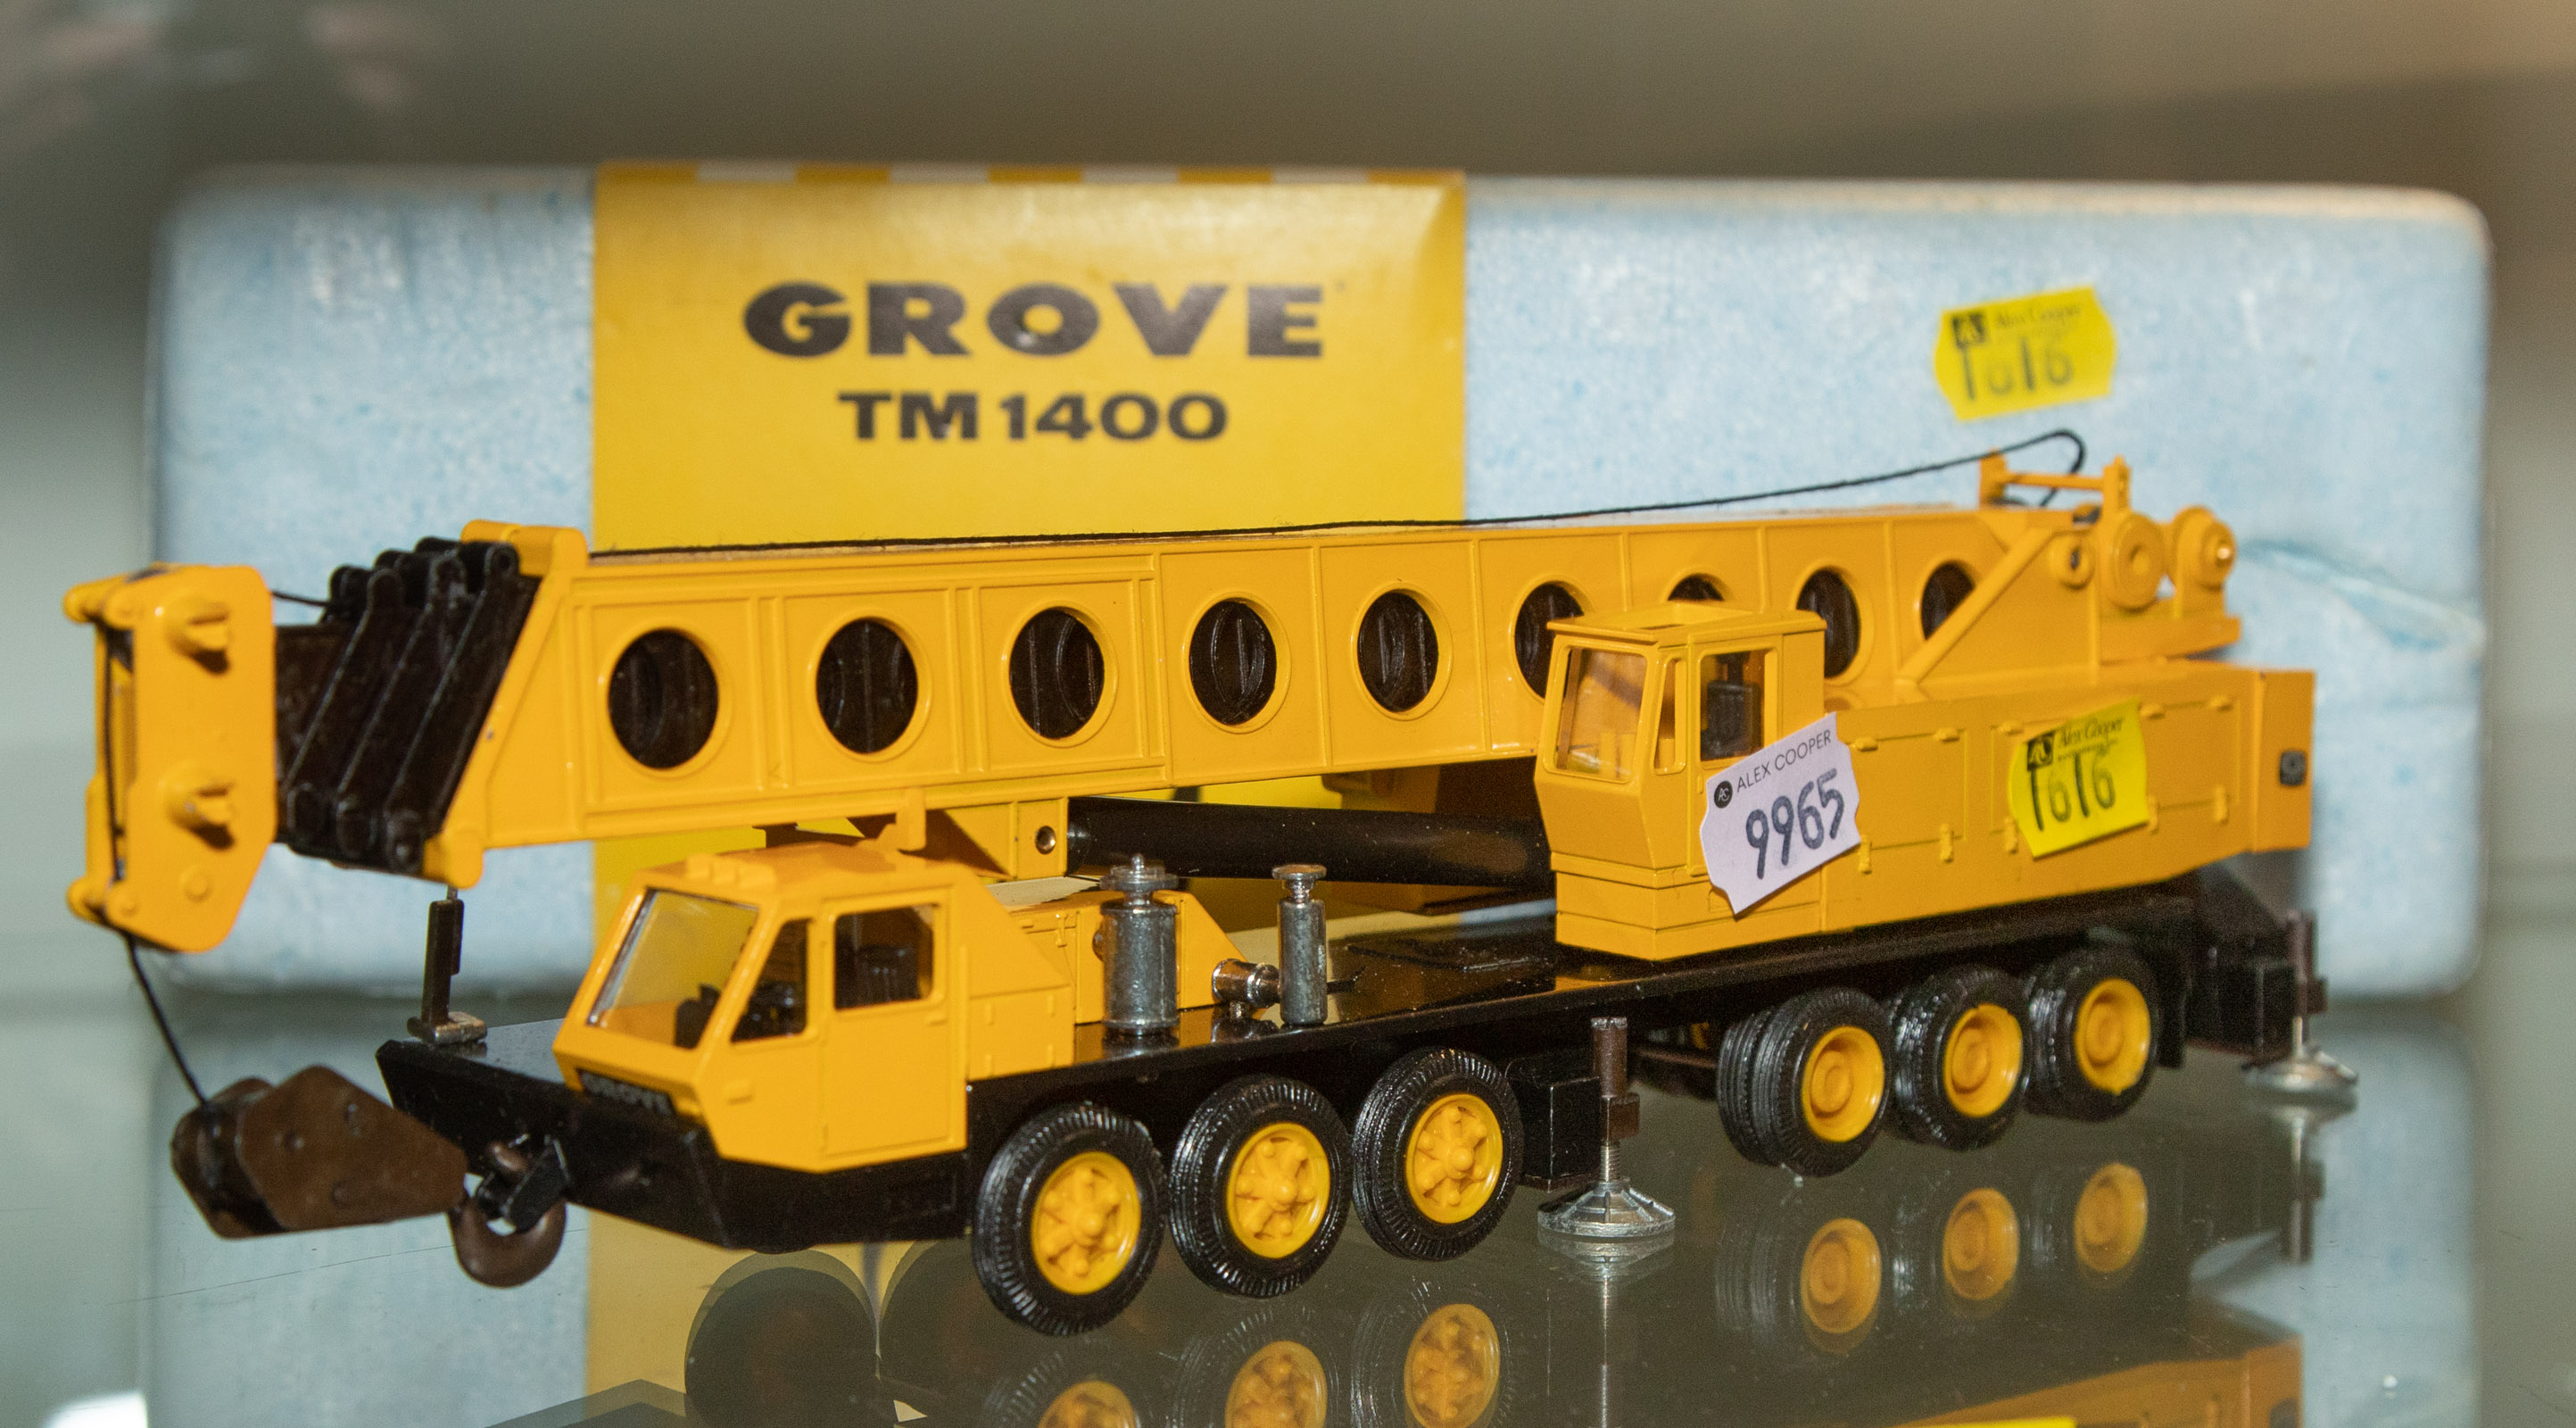 GROVE TM 1400 MOBILE TOY CRANE